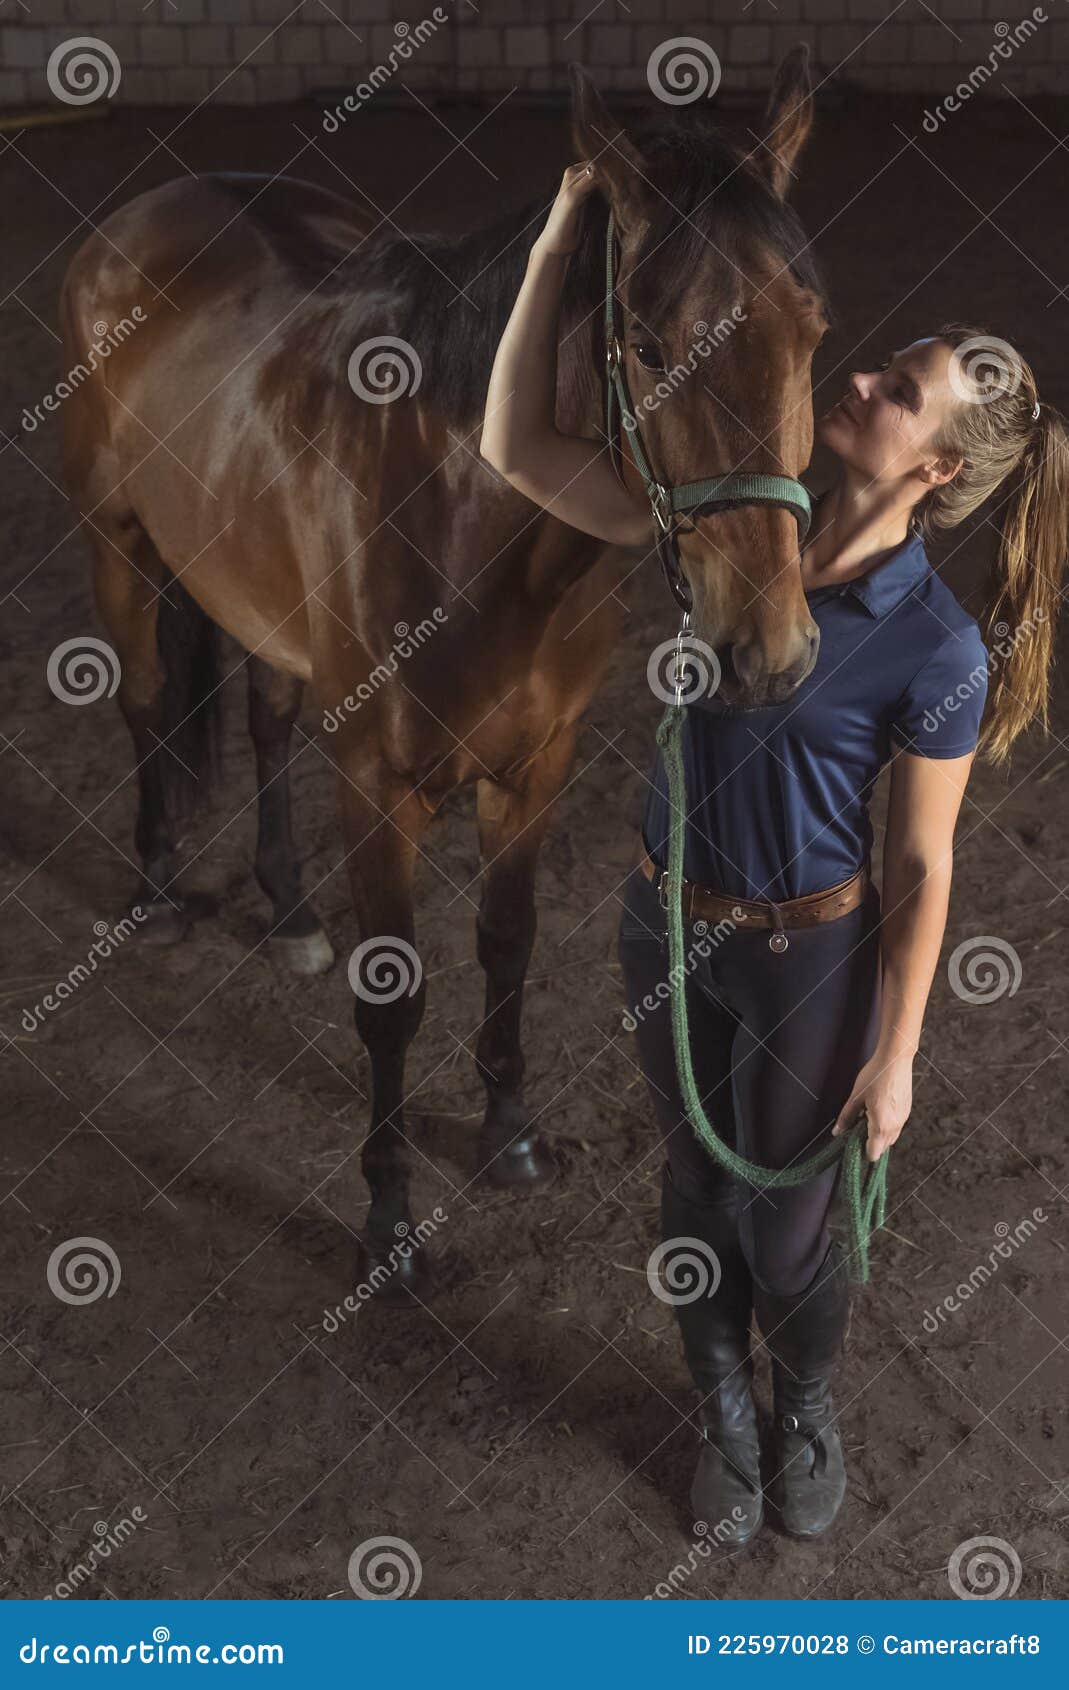 Cavalo Está Sentado Na Frente De Um Fundo Escuro, Fotos De Cavalos A Venda  Imagem de plano de fundo para download gratuito